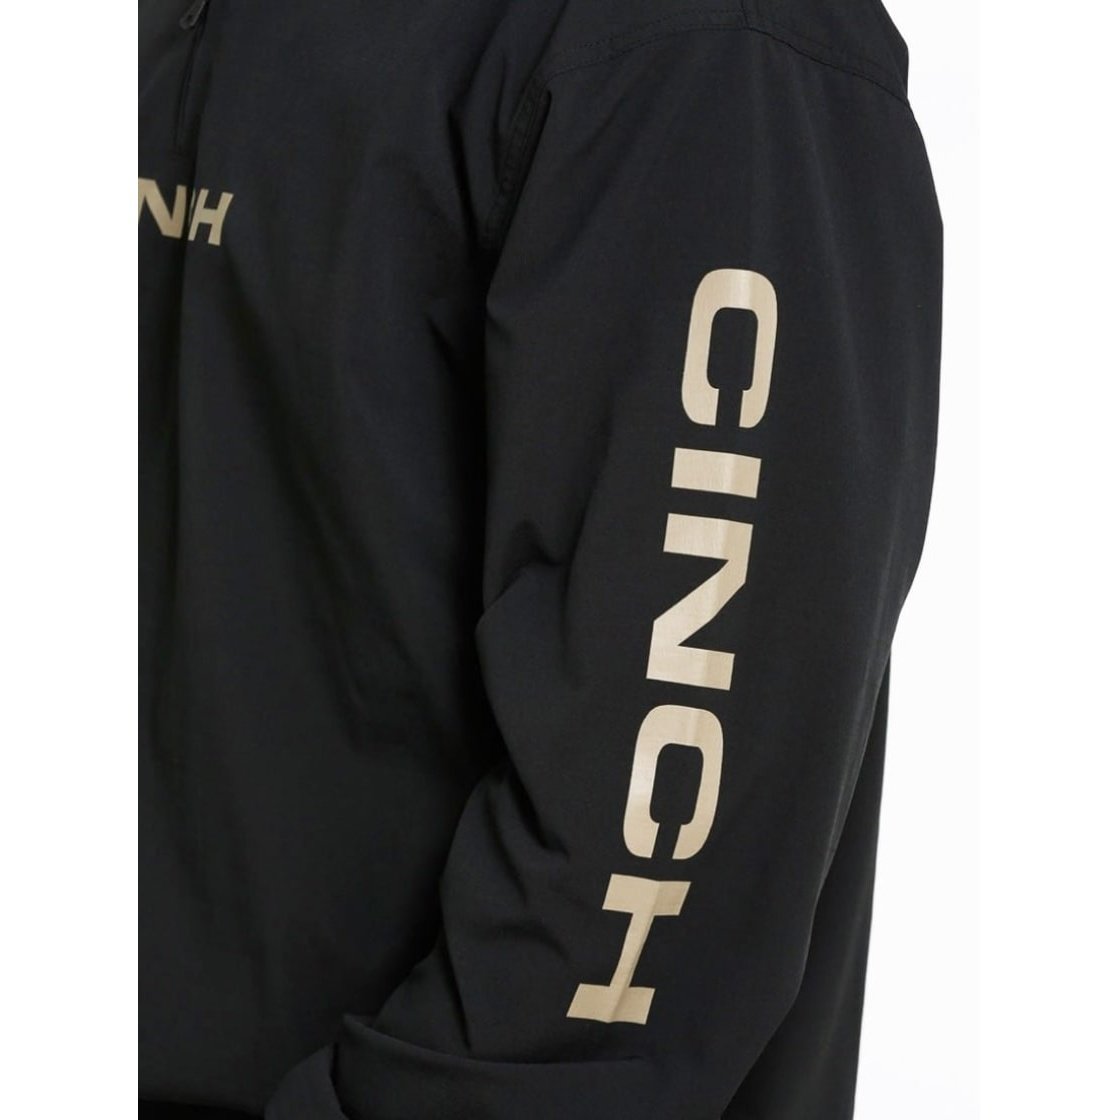 Cinch Men’s Jacket Water-Resistant Windbreaker Black MWJ1000008 - Cinch